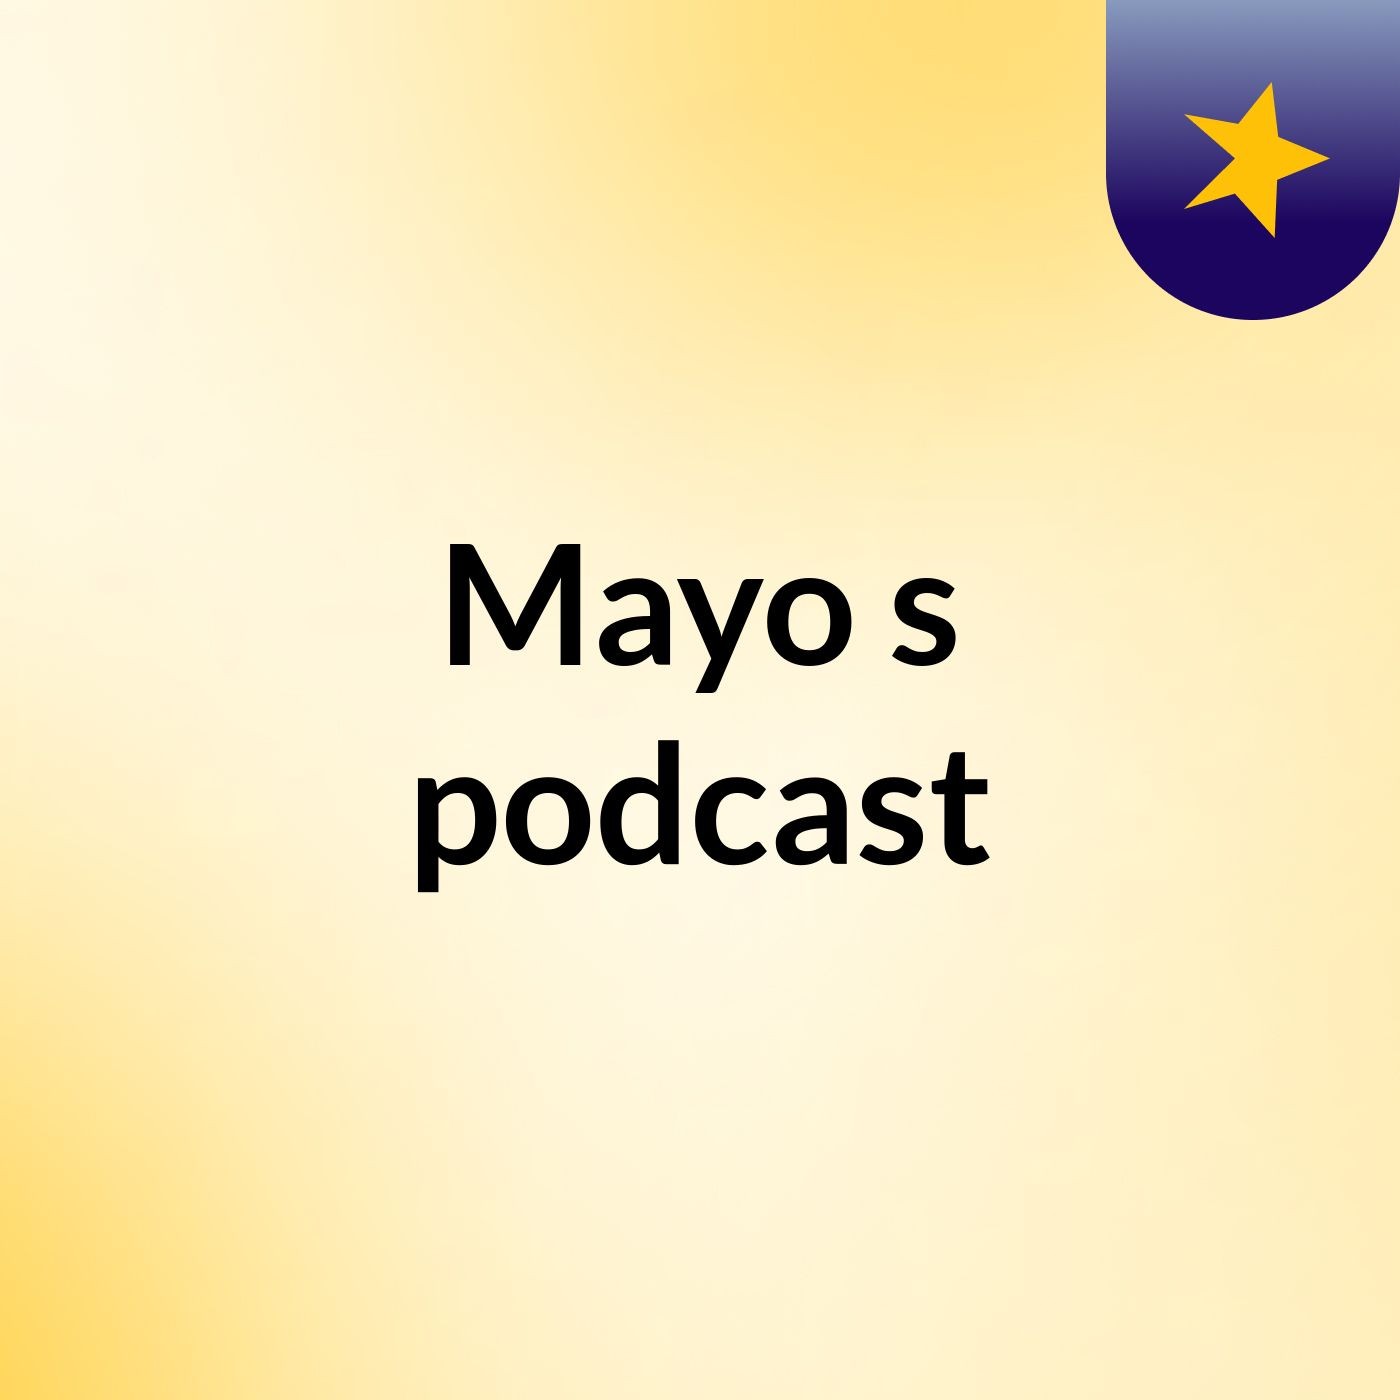 Episode 3 - Mayo's podcast